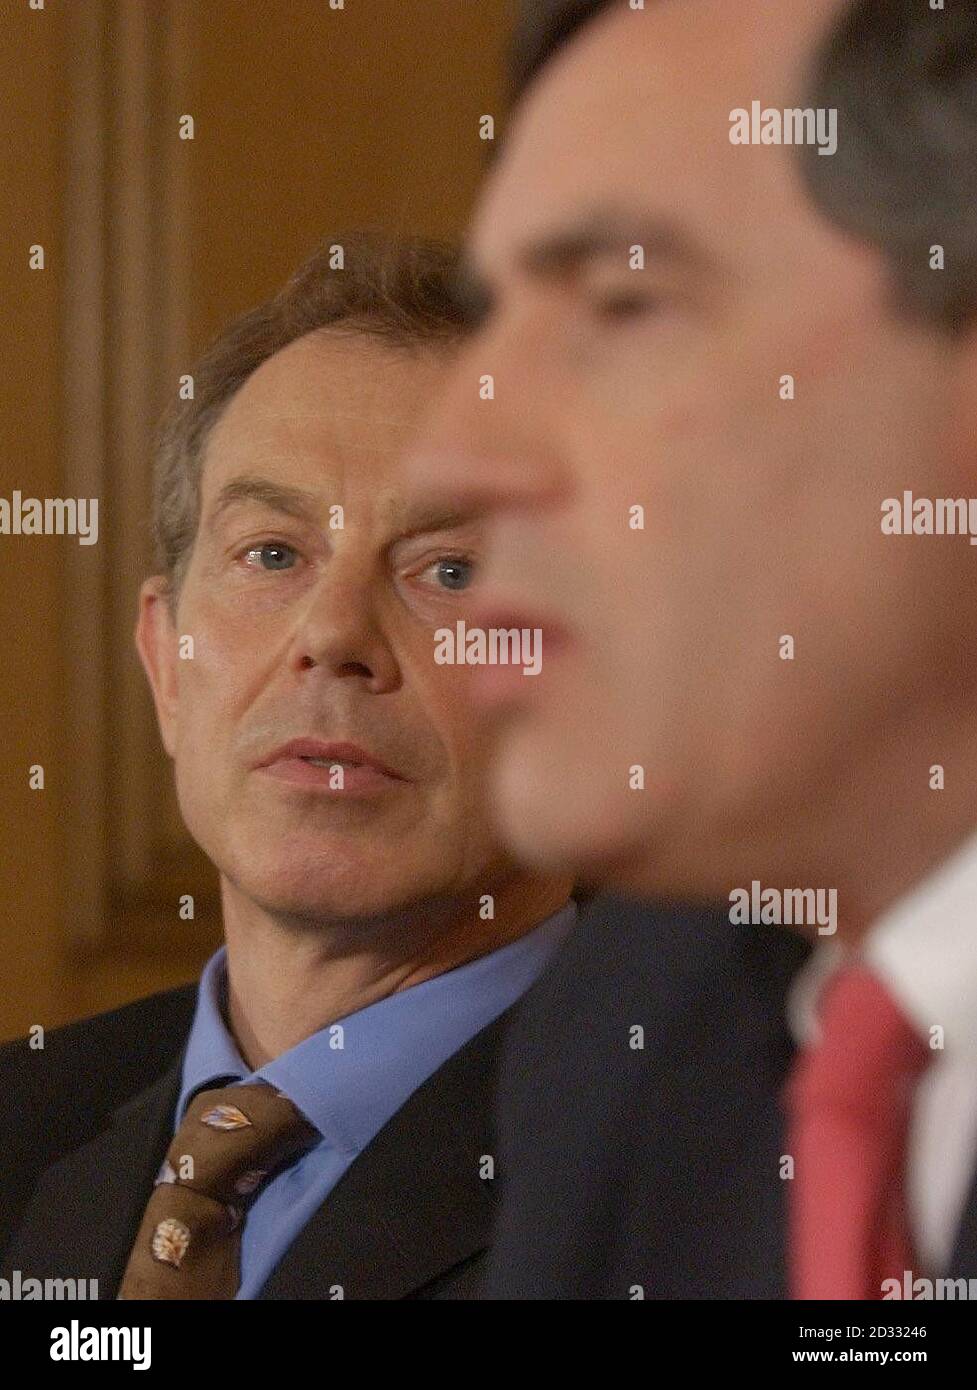 Der britische Premierminister Tony Blair und der Schatzkanzler Gordon Brown, rechts, während einer gemeinsamen Pressekonferenz in der Downing Street 10 in London, nachdem sie beschlossen hatten, den Beitritt Großbritanniens zur europäischen Einheitswährung zu verzögern. Stockfoto